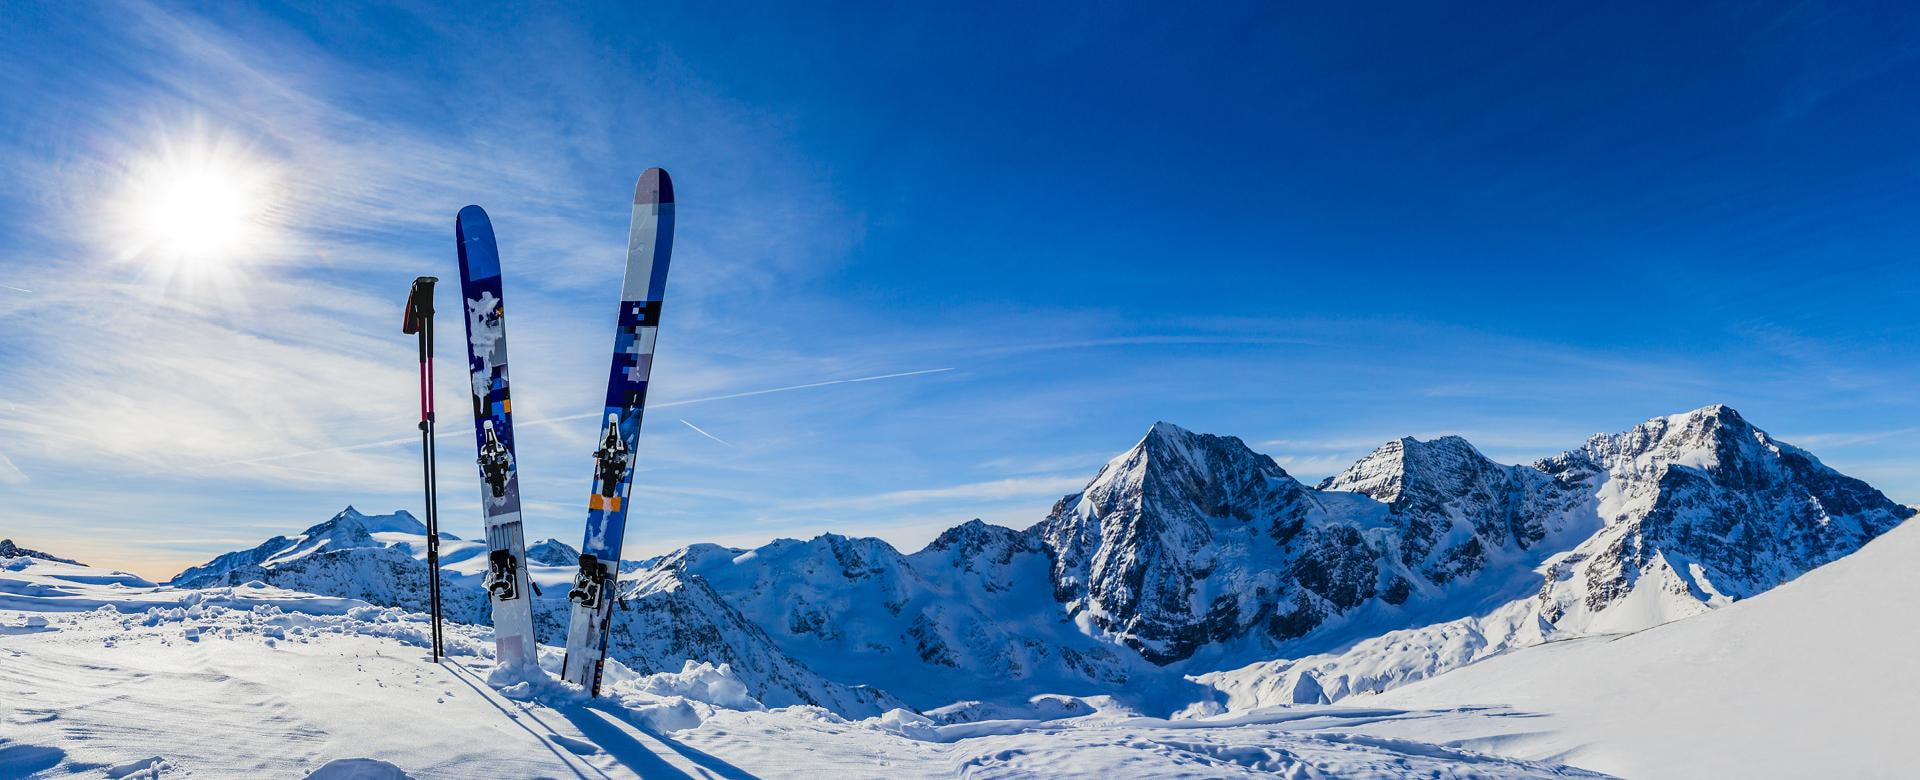 Skifahren in der Wintersaison, Berge und Skitourenausstattungen auf dem Gipfel der schneebedeckten Berge an sonniger Zeit. Südtirol, Solda in Italien.